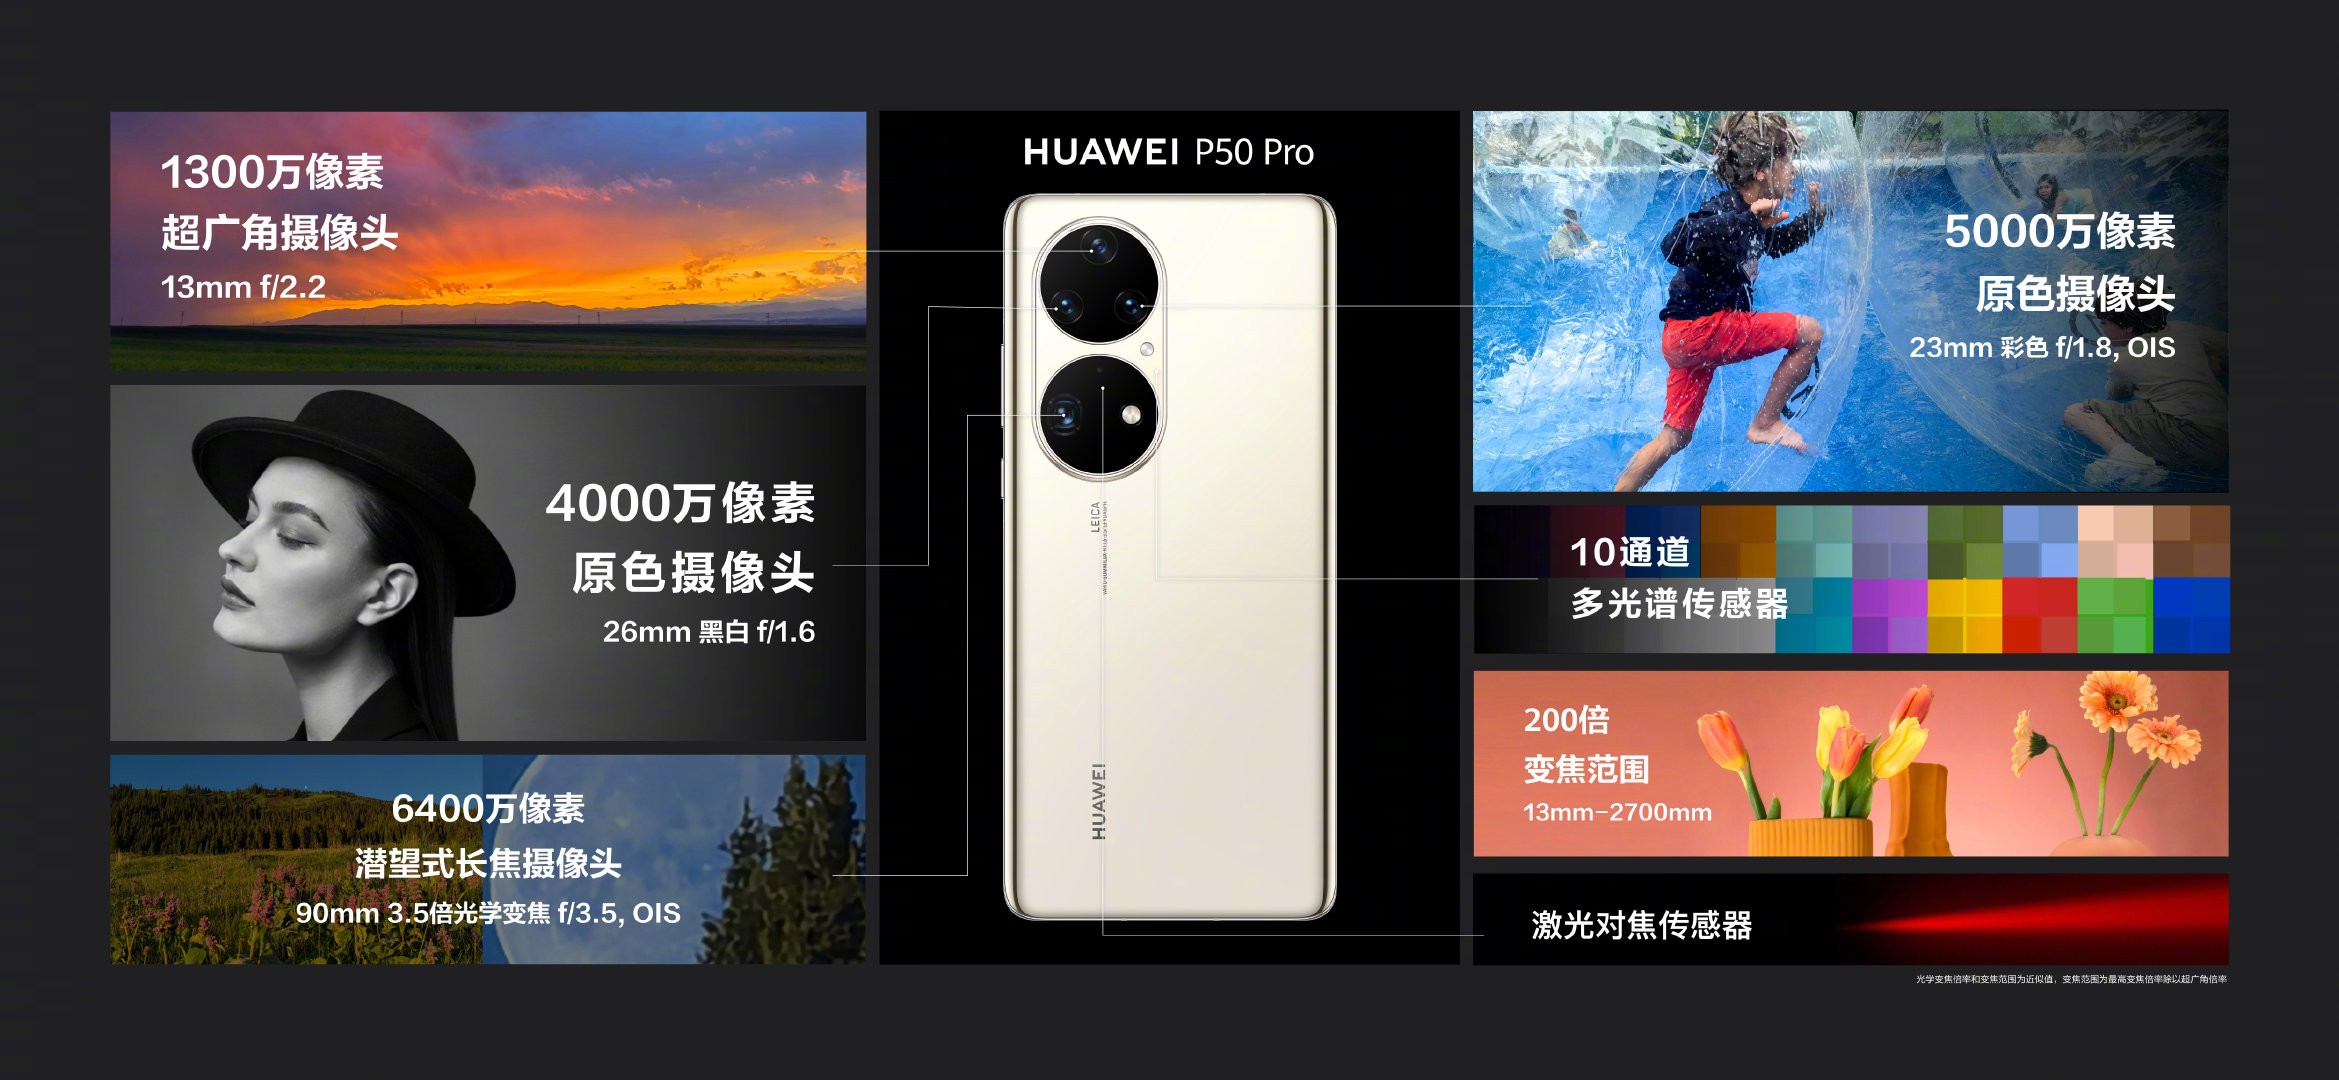 مراجعة هاتف Huawei P50 Pro